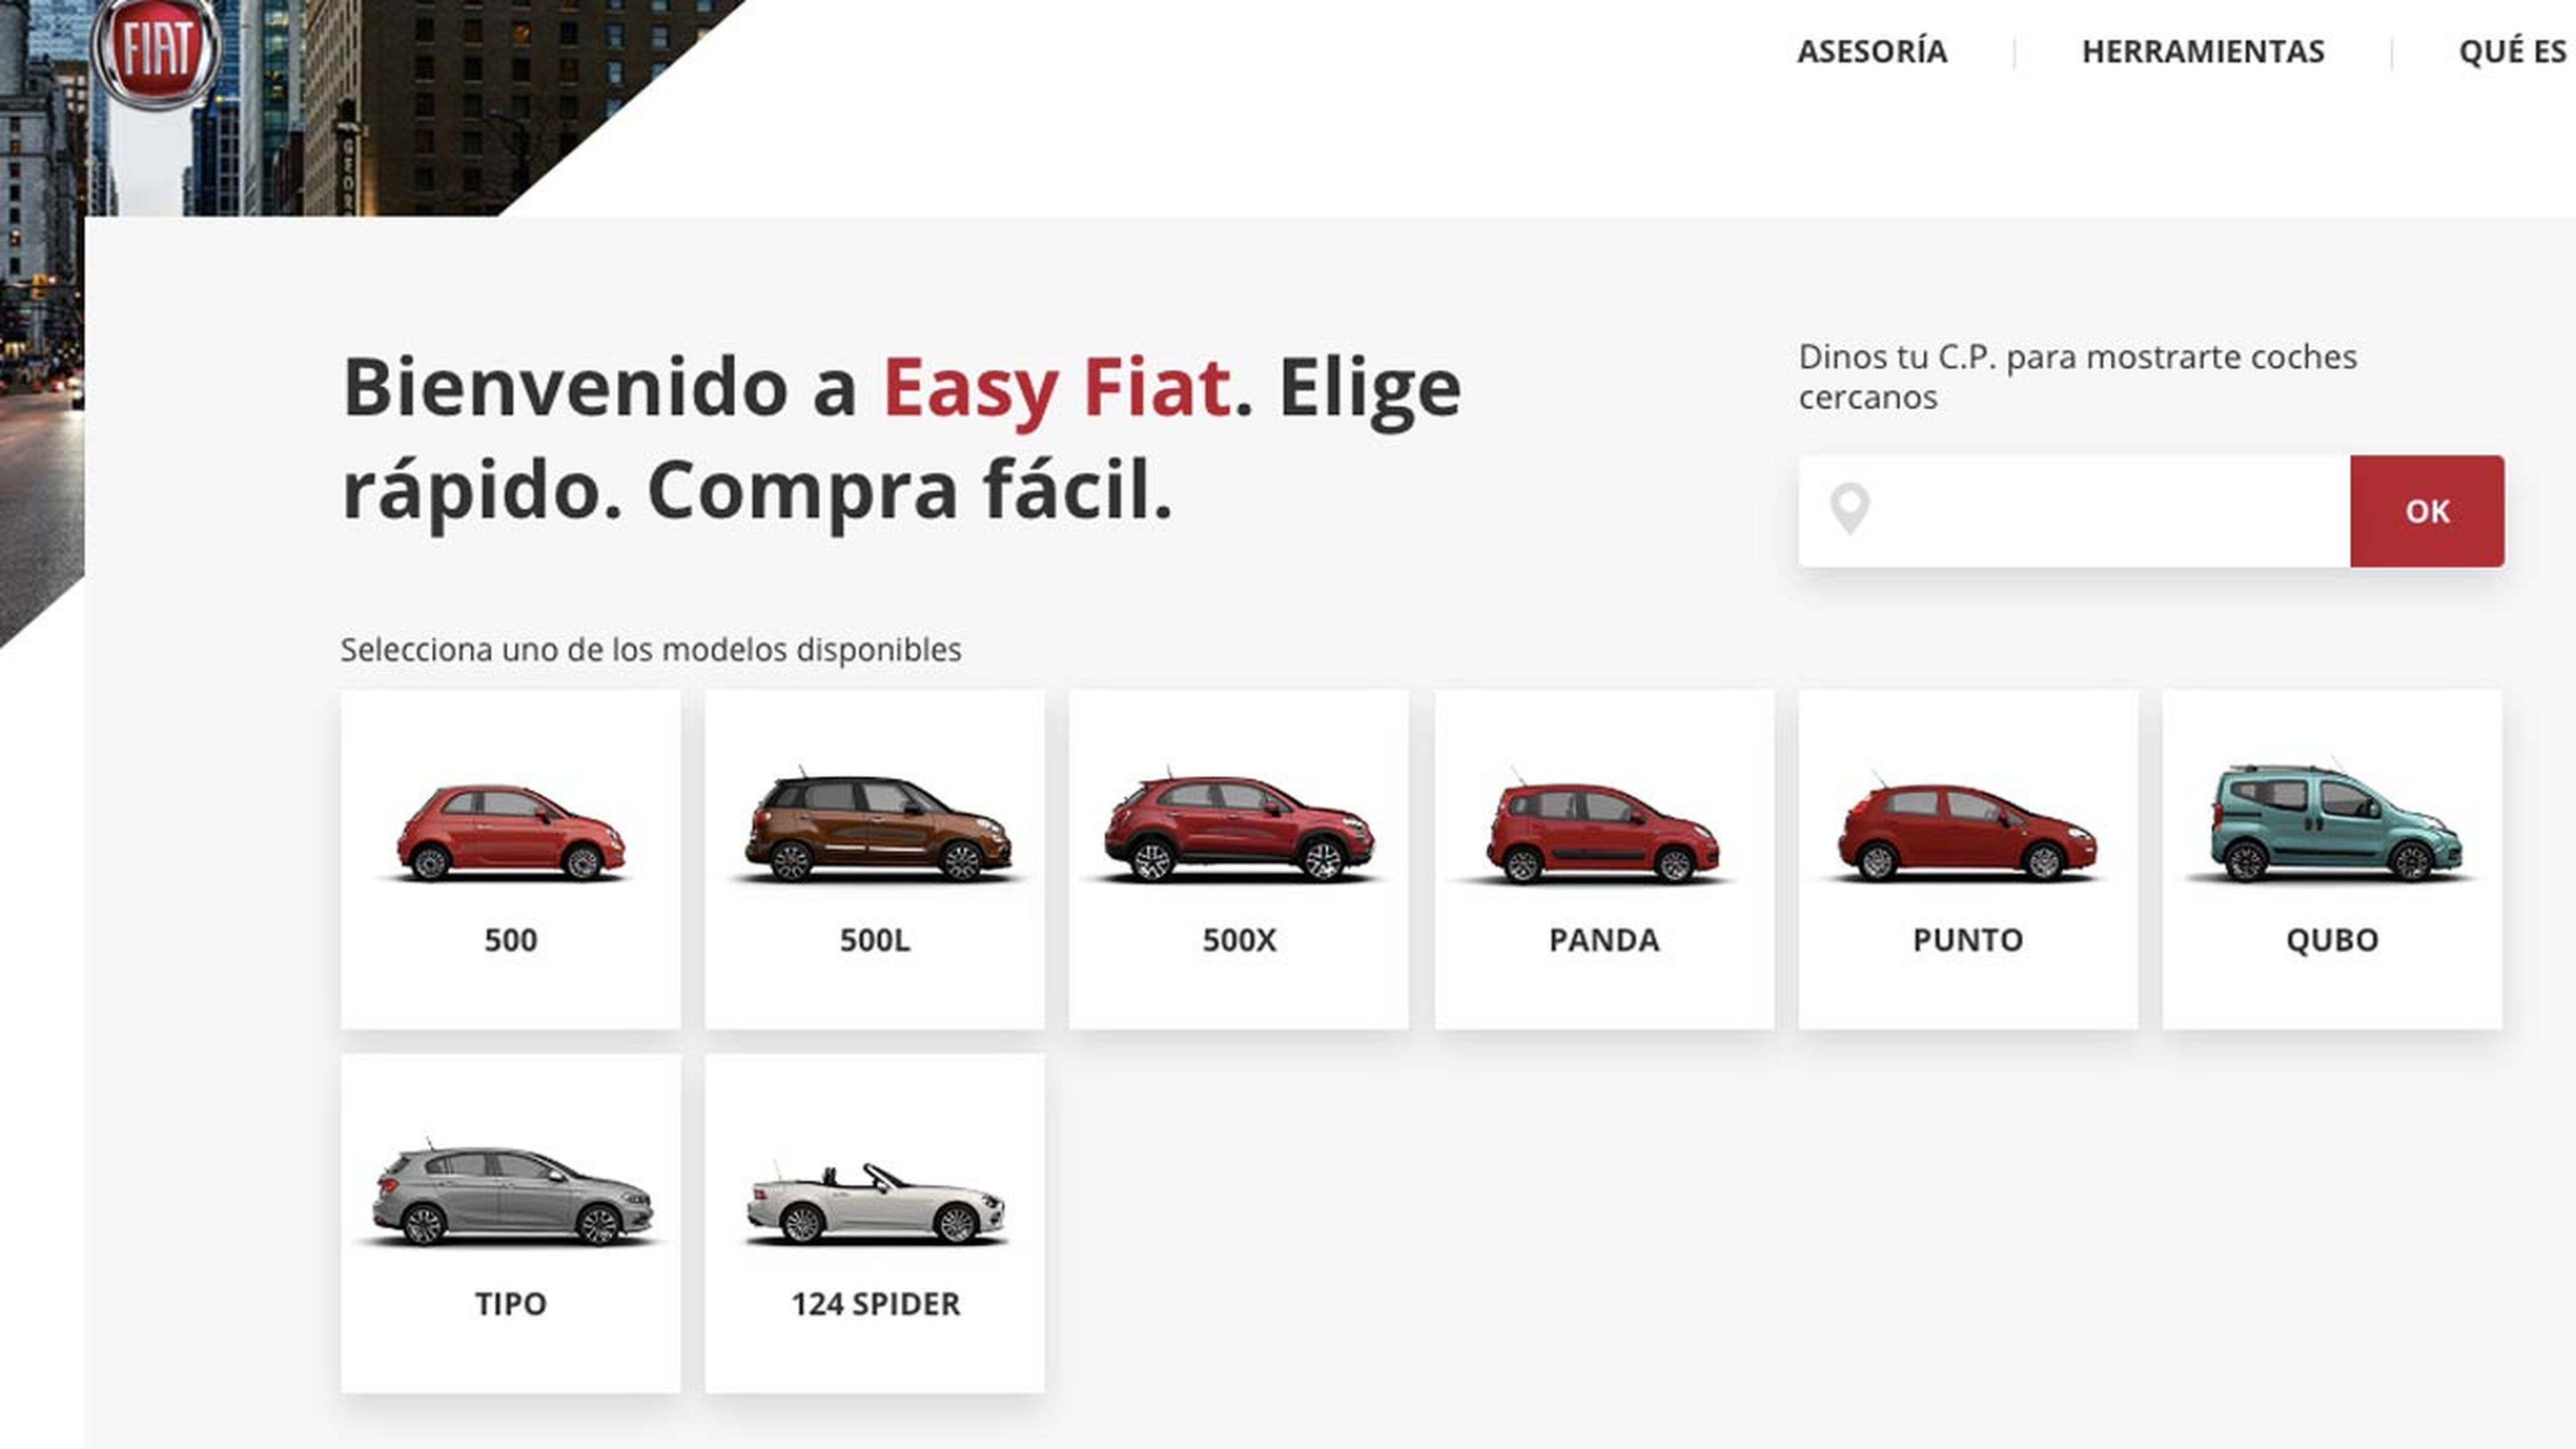 Easy Fiat